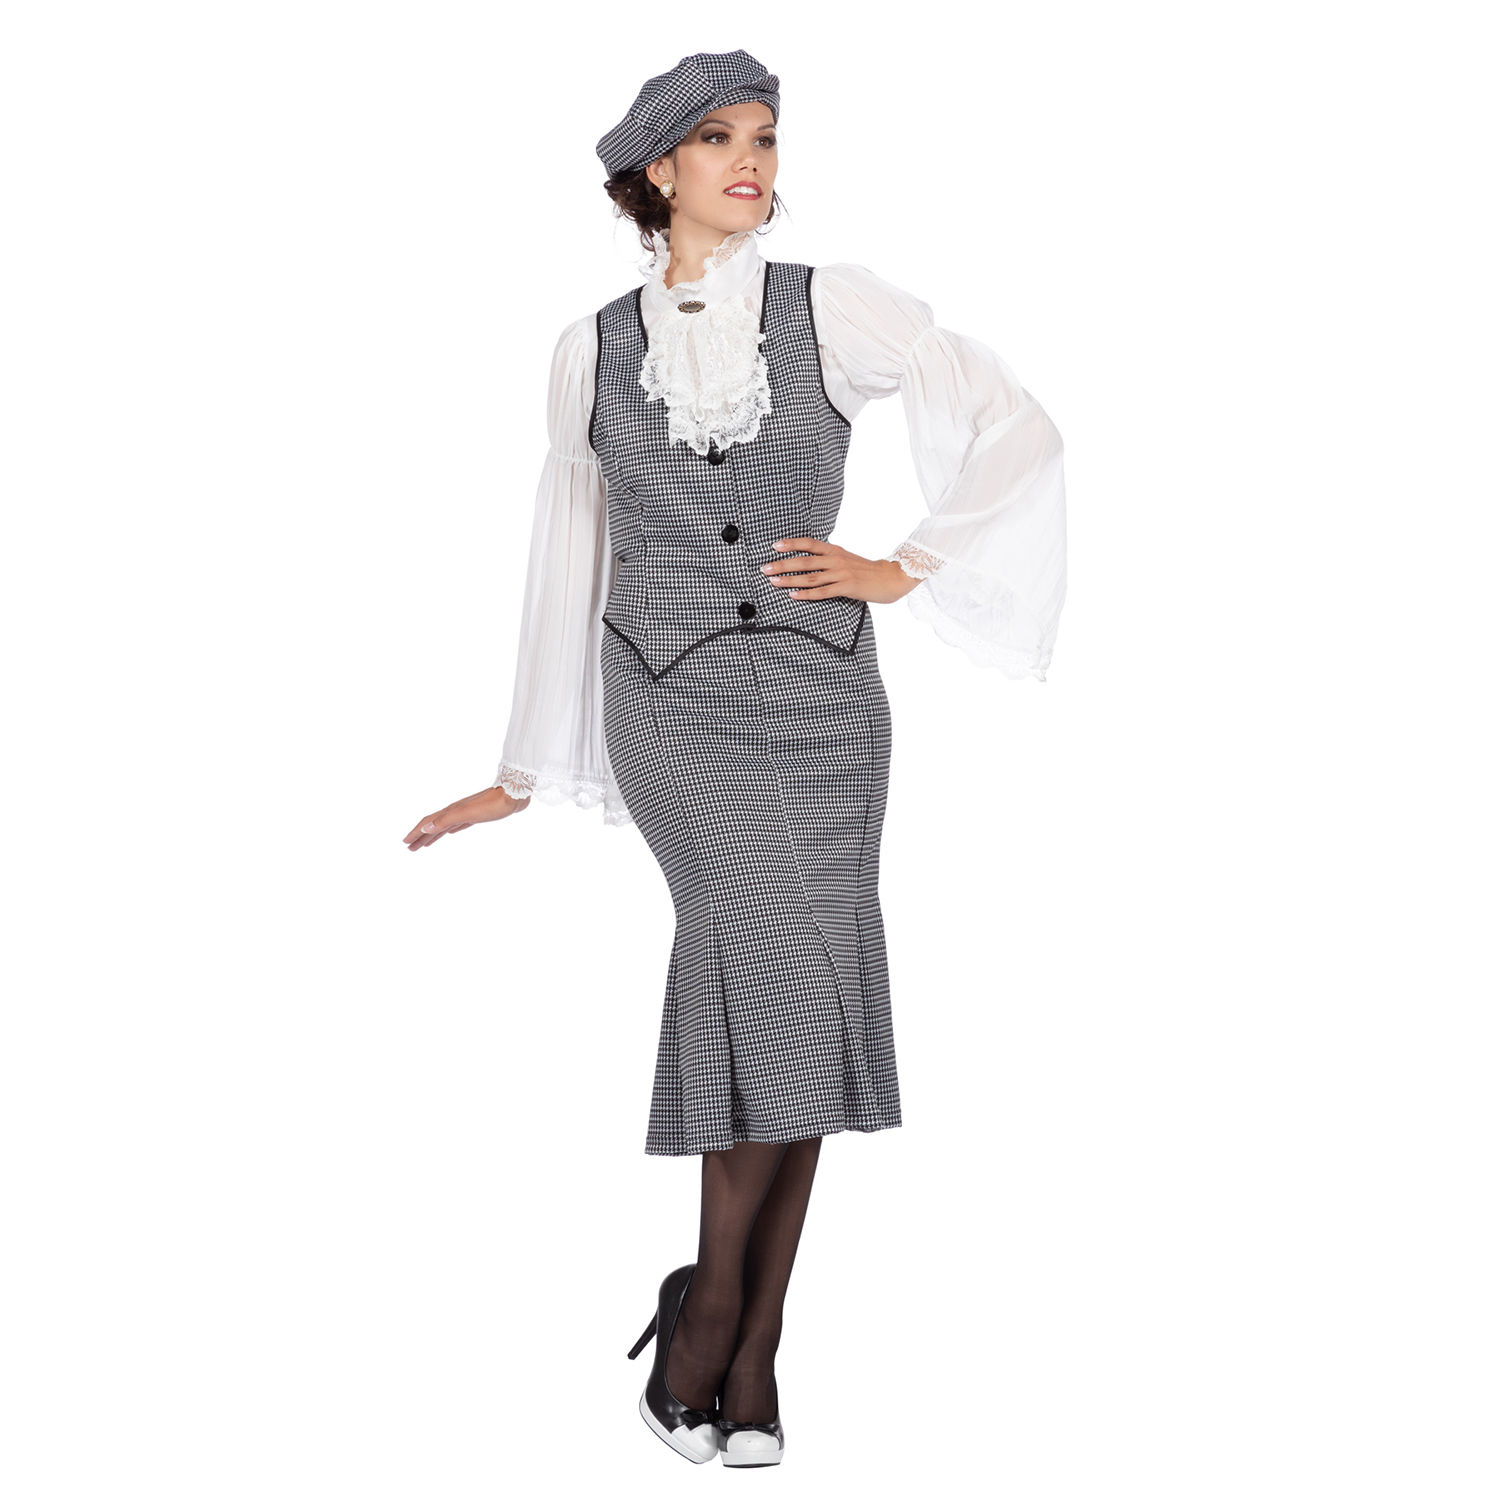 Damen-Kostüm 20er Jahre Polly, 3-teilig mit Mütze, Weste & Rock, Gr. 44